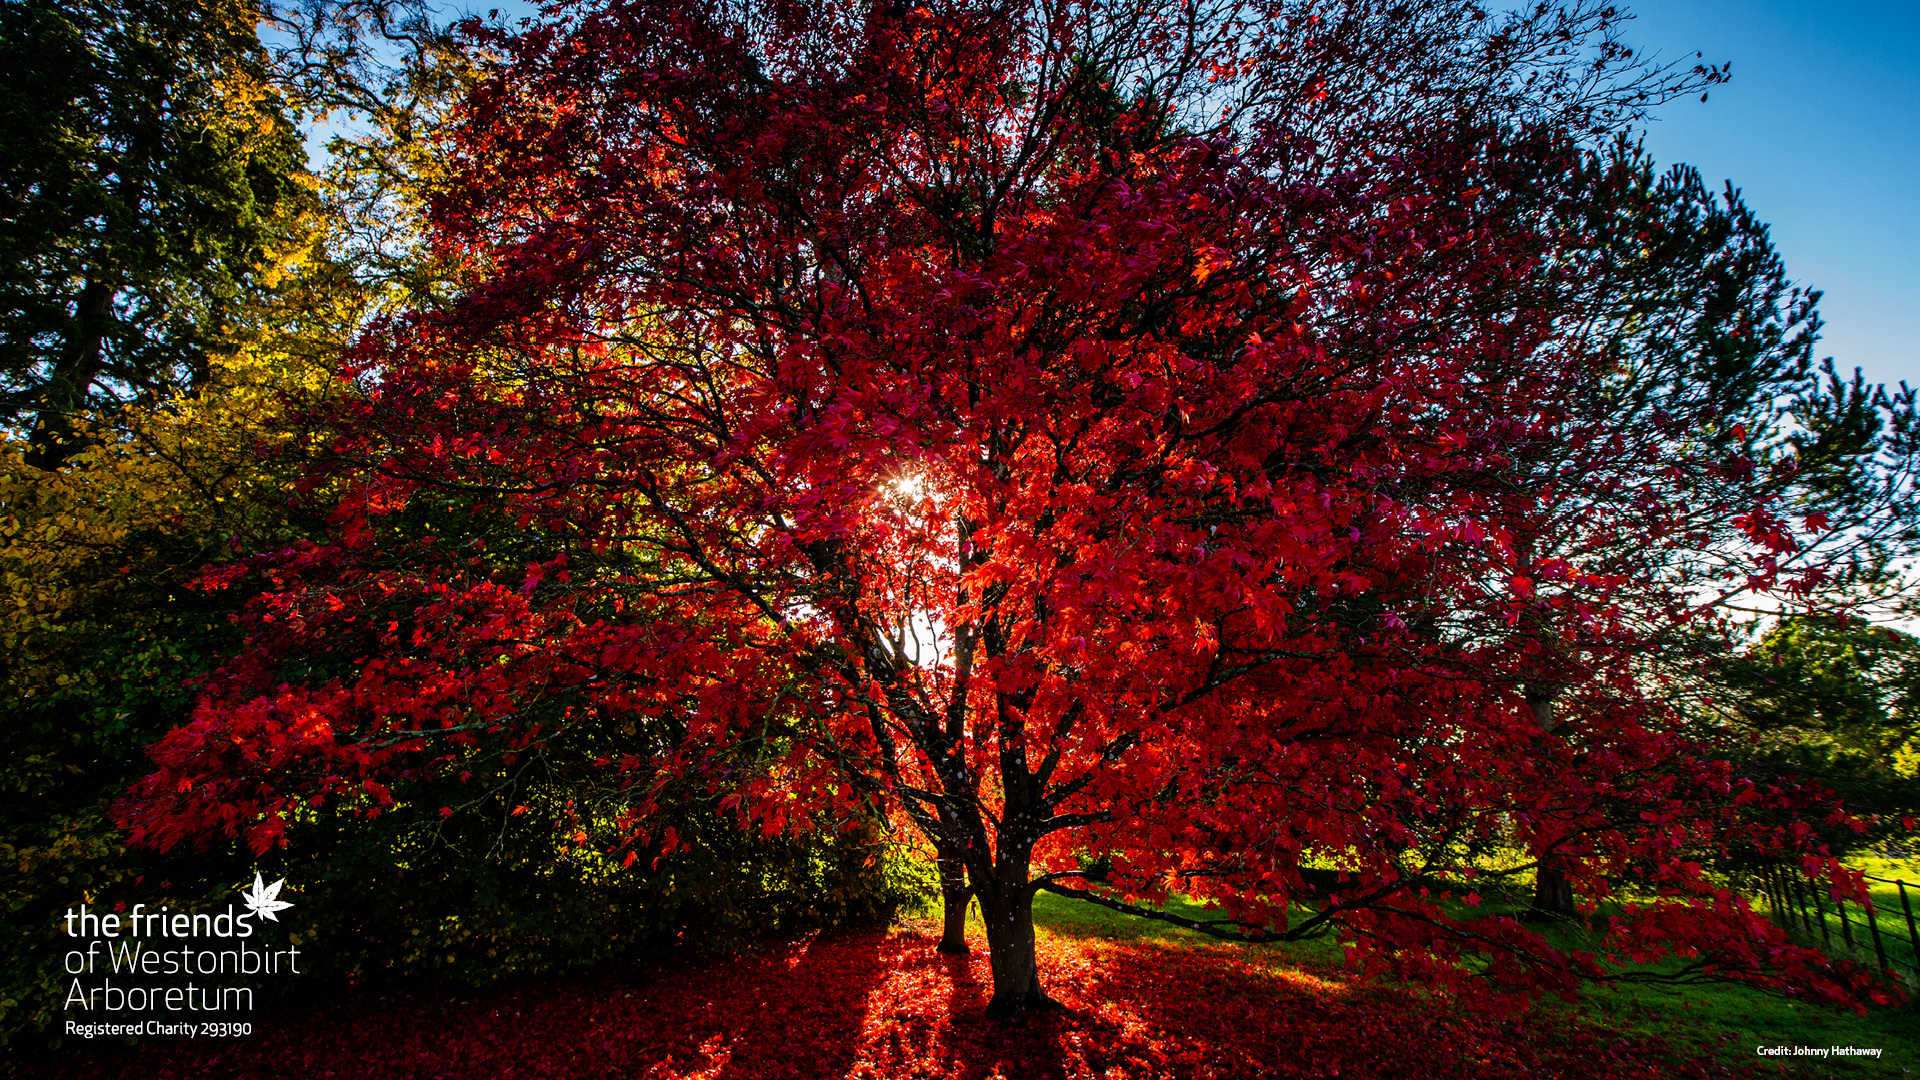 Autumn colour at Westonbirt Arboretum